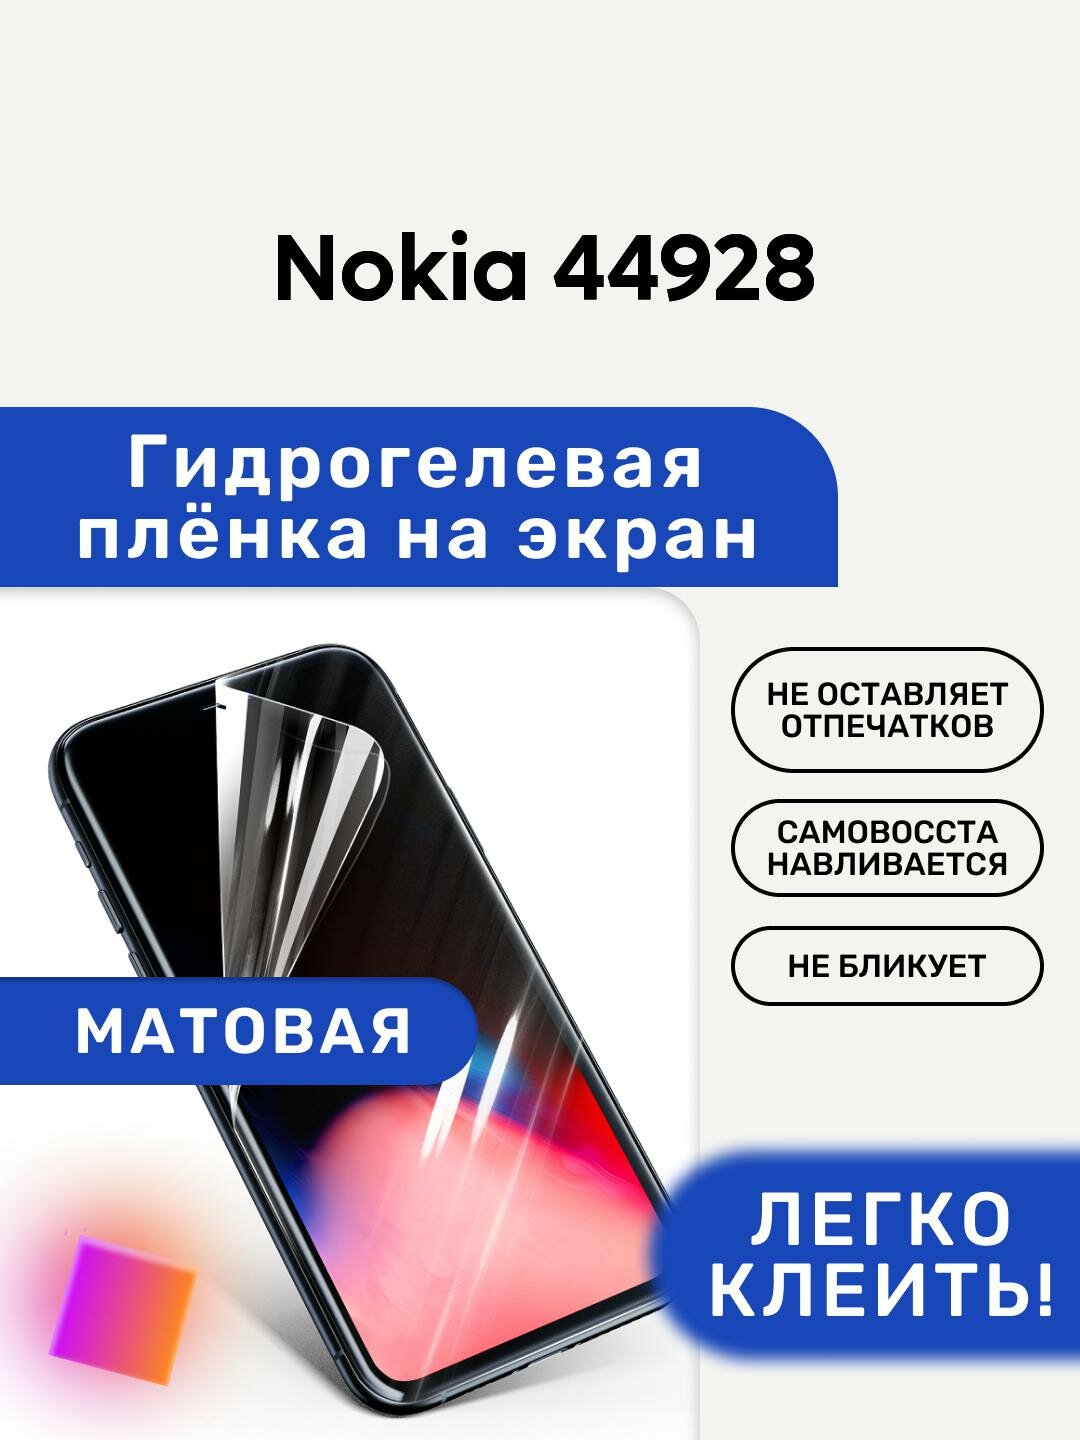 Матовая Гидрогелевая плёнка, полиуретановая, защита экрана Nokia 44928